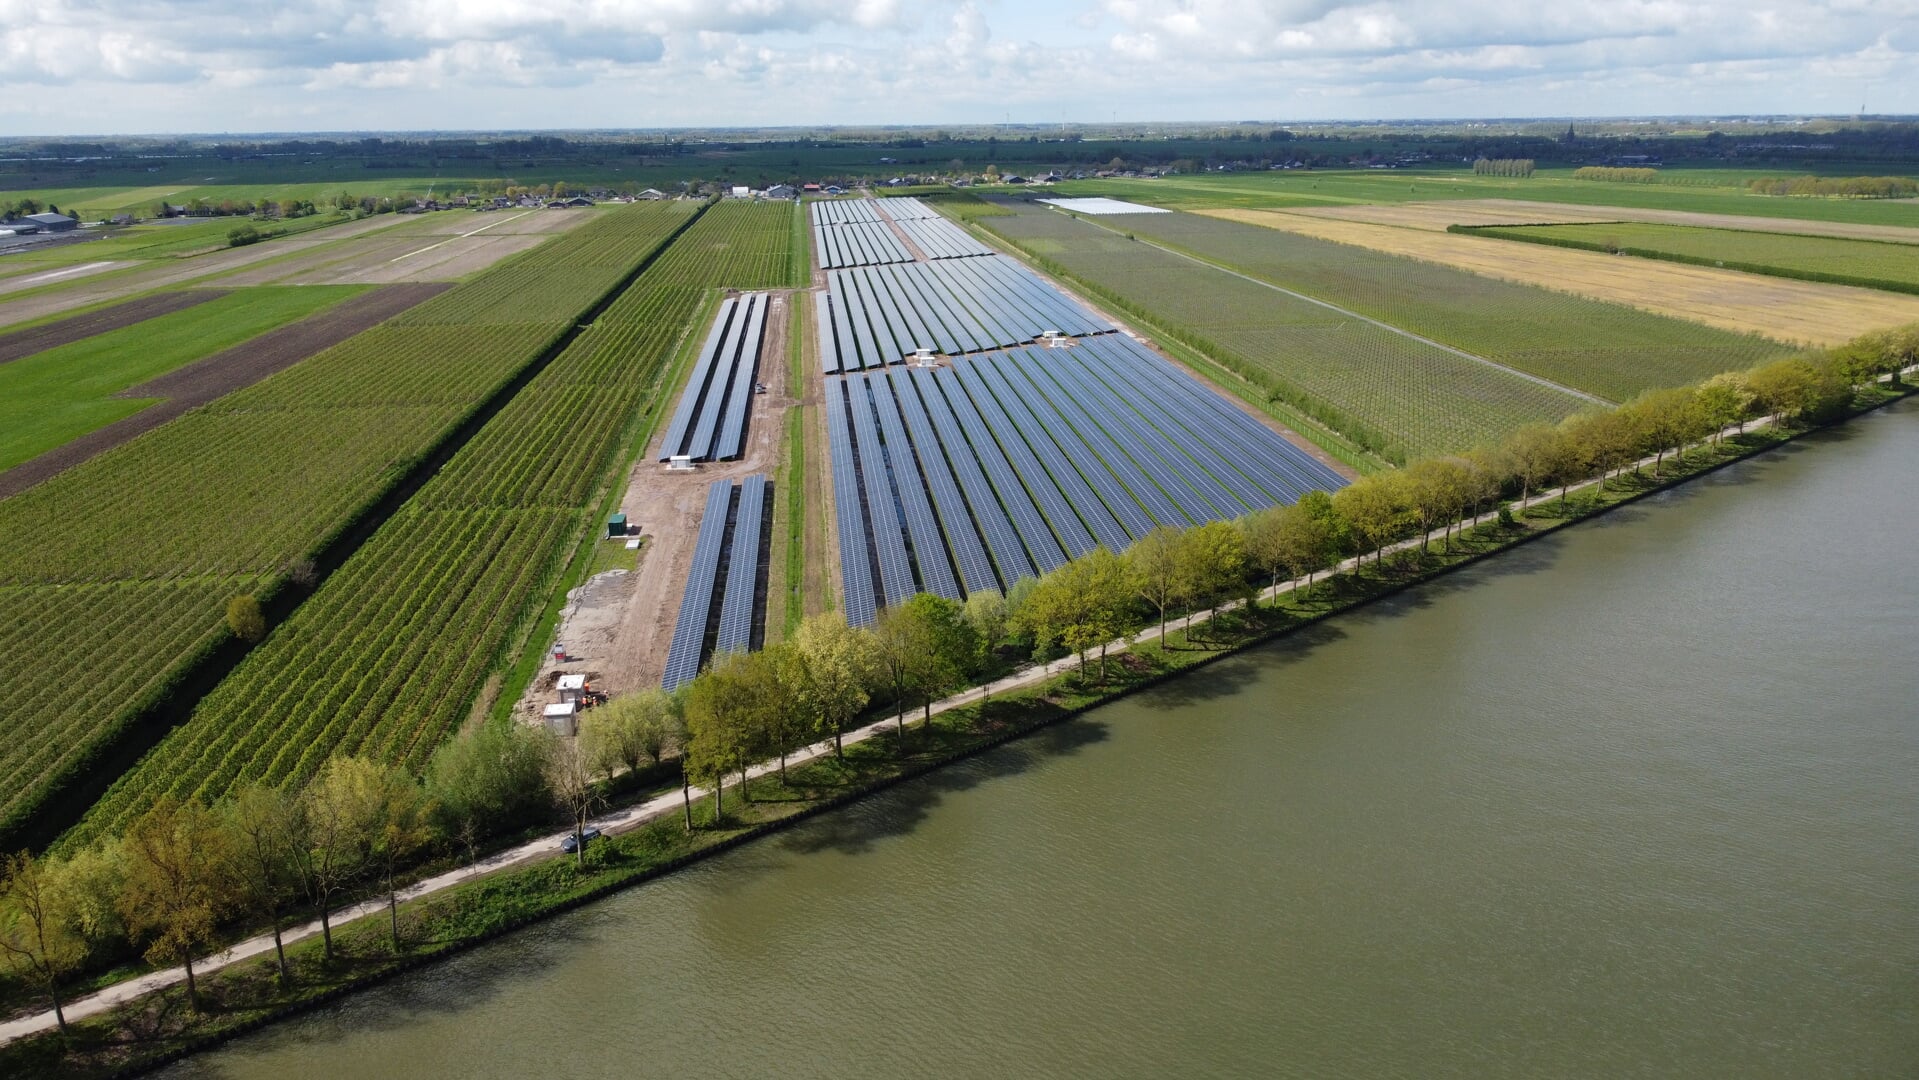 Het zonnepark wordt 16 mei officieel geopend (meer info www.schalkwijksestroom.nl).